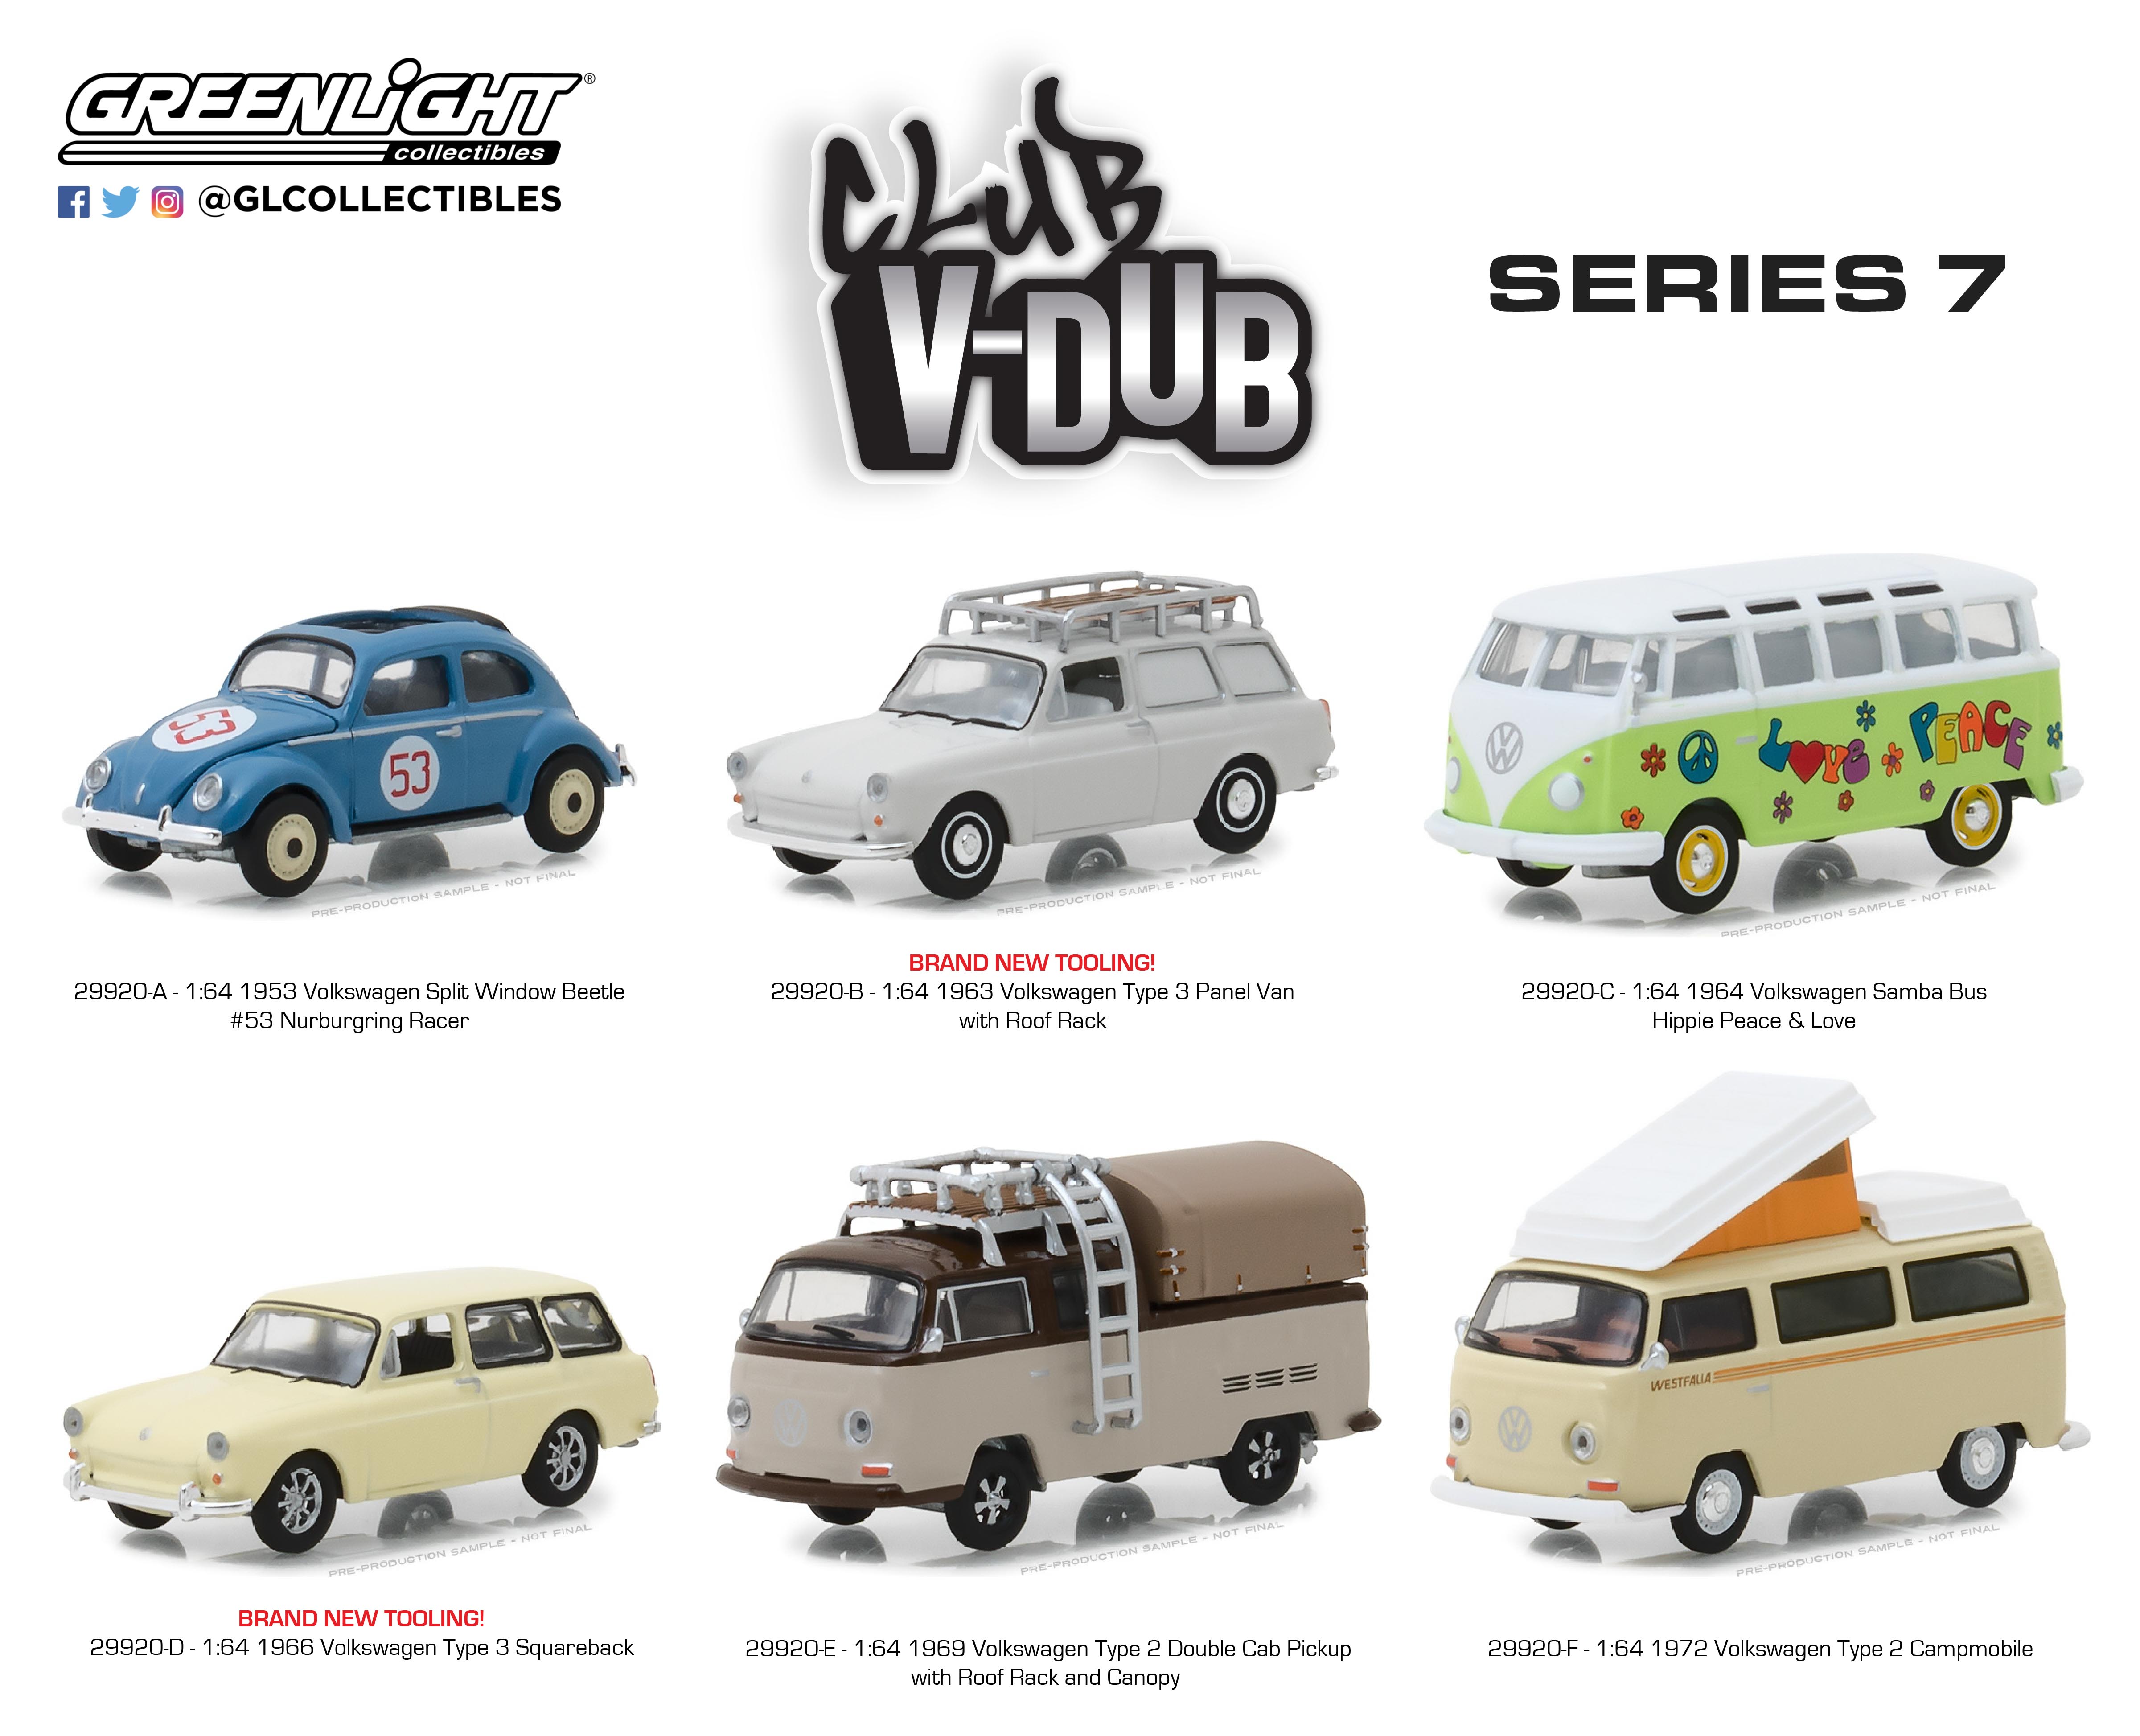 Greenlight 1//64 Club V-Dub Series 7-1963 Volkswagen Type 3 Squareback Panel Van 1:64 Scale Die-Cast Vehicle Die Cast